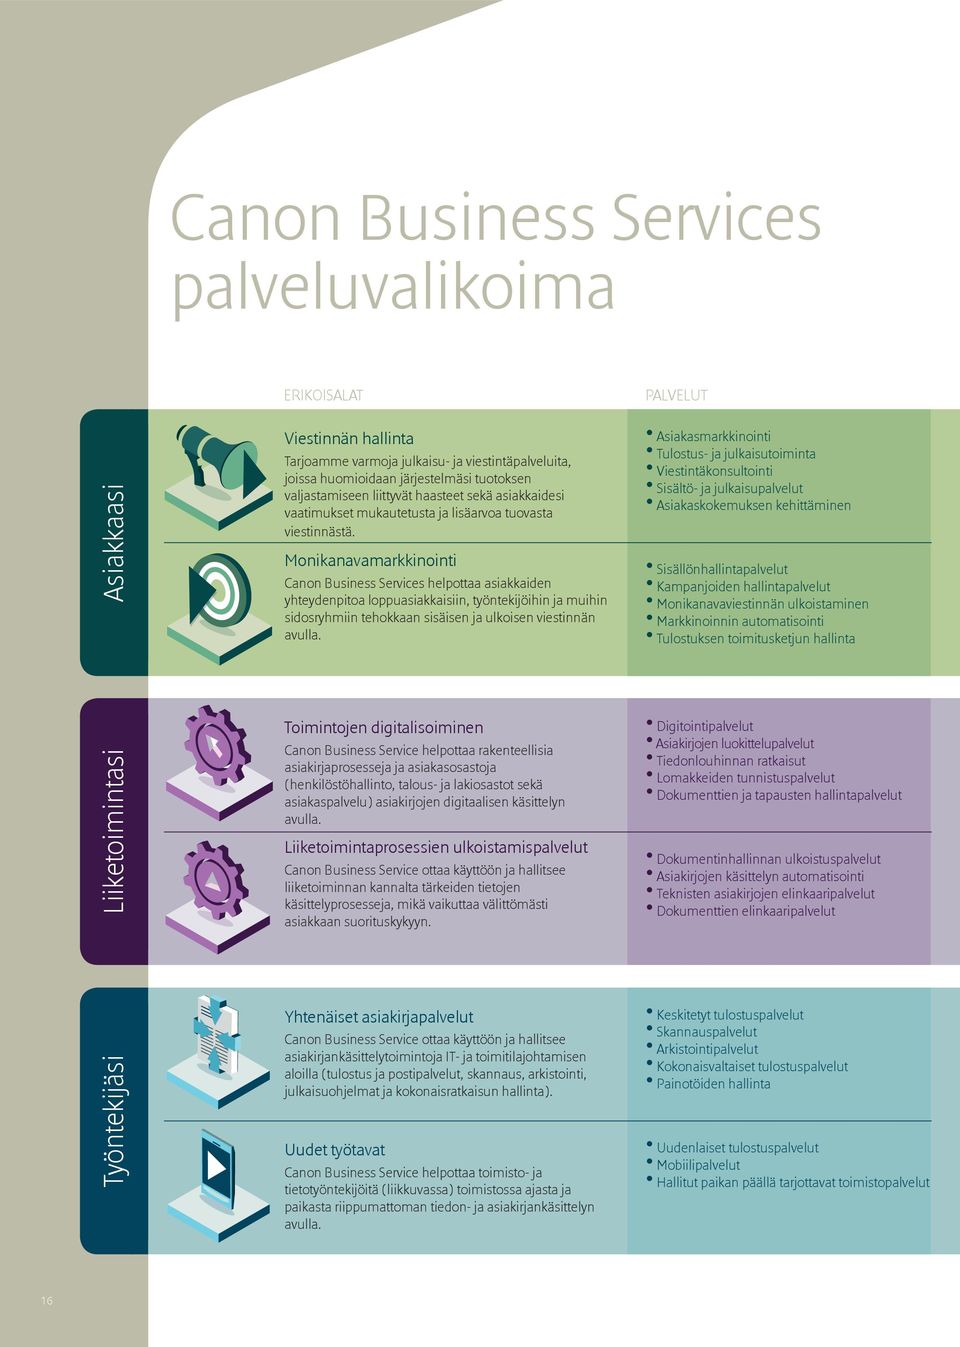 Monikanavamarkkinointi Canon Business Services helpottaa asiakkaiden yhteydenpitoa loppuasiakkaisiin, työntekijöihin ja muihin sidosryhmiin tehokkaan sisäisen ja ulkoisen viestinnän avulla.